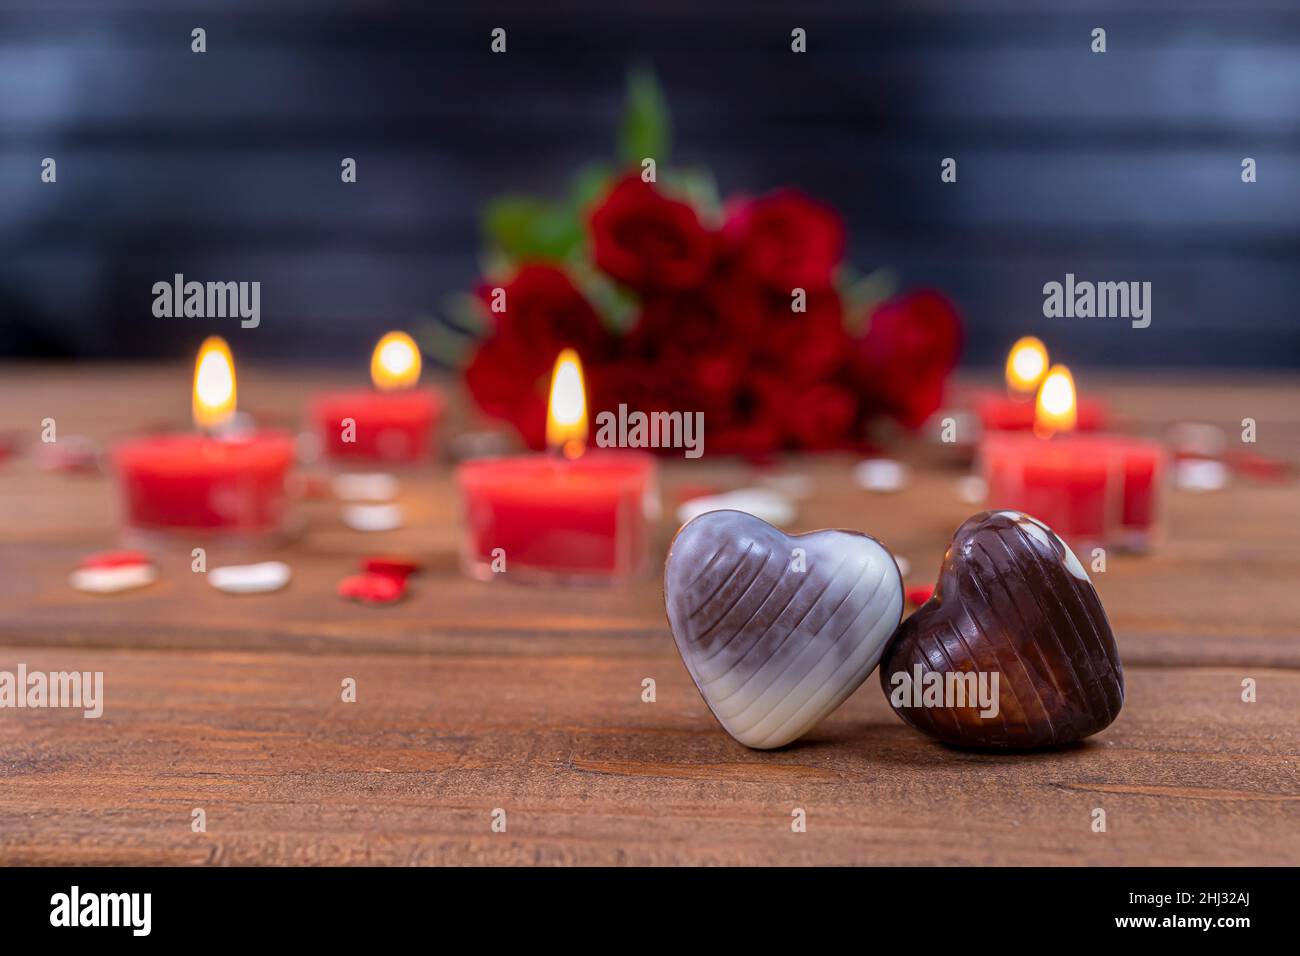 Valentinstag Konzept Schokolade Bonbons herzförmig und rote Rosen mit Kerzen auf Holz. Liebe und Romantik Konzept. Stockfoto